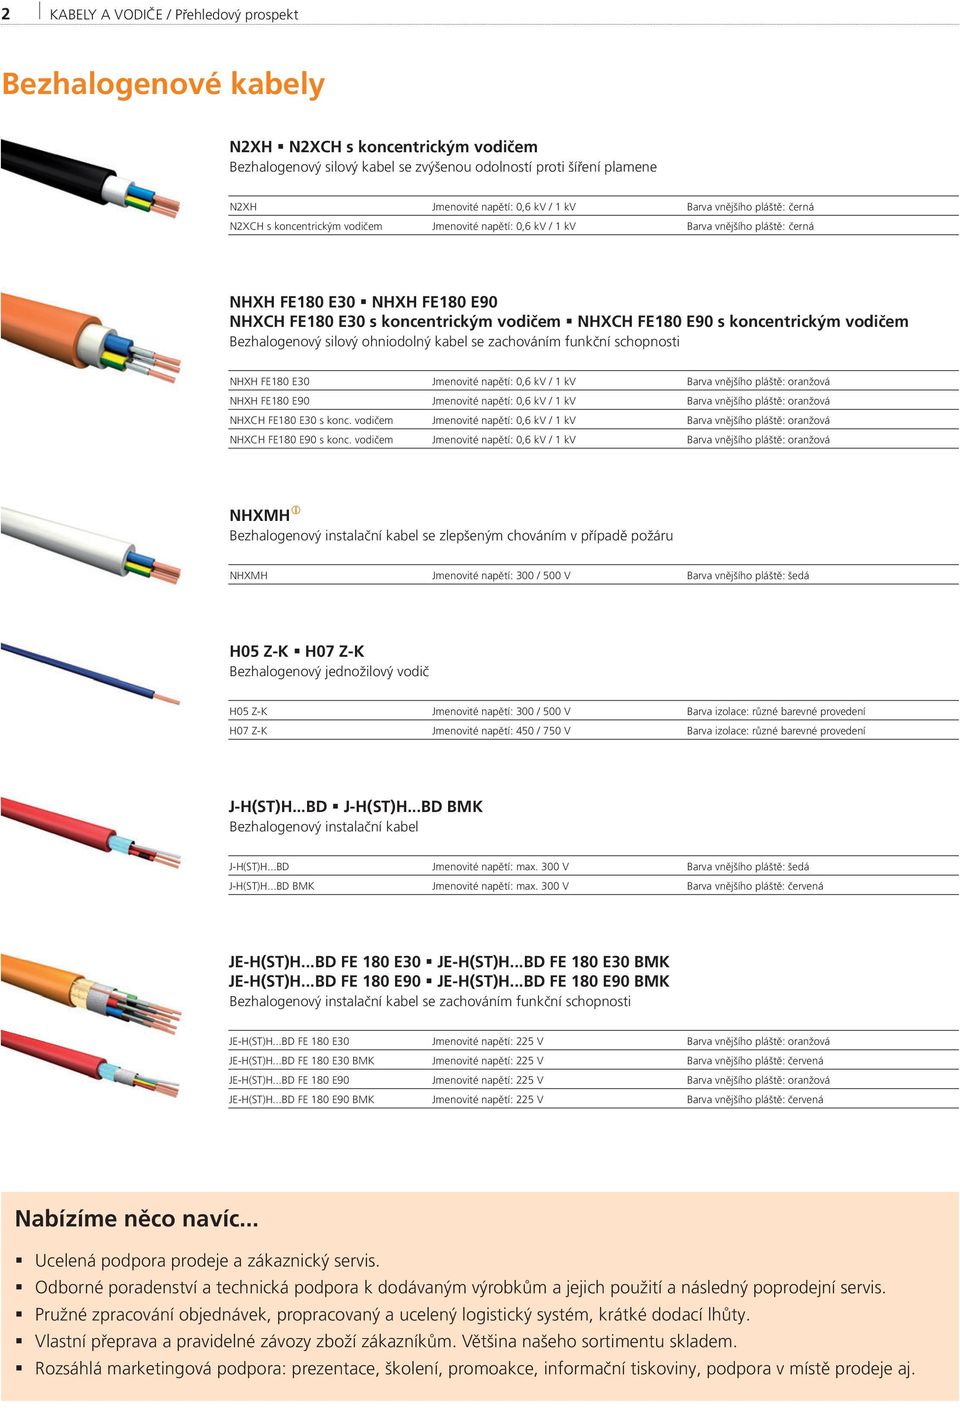 FE180 E90 s koncentrickým vodičem Bezhalogenový silový ohniodolný kabel se zachováním funkční schopnosti NHXH FE180 E30 Jmenovité napětí: 0,6 kv / 1 kv Barva vnějšího pláště: oranžová NHXH FE180 E90